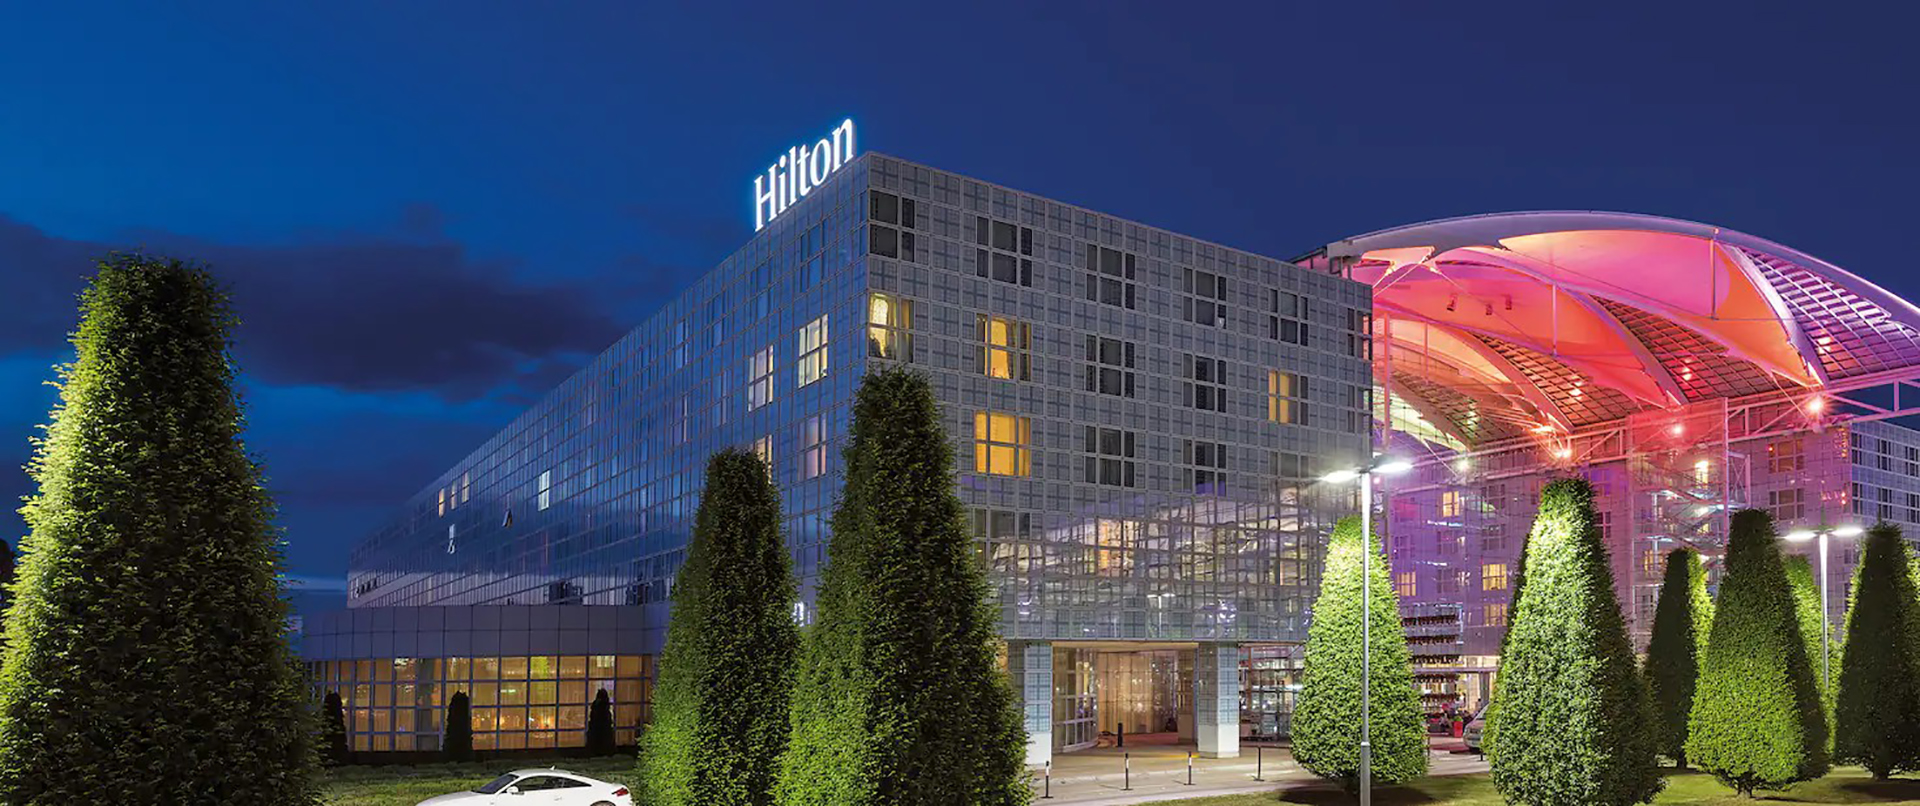 El lujoso hotel Hilton del aeropuerto de Munich, Alemania. (https://www.hilton.com/)